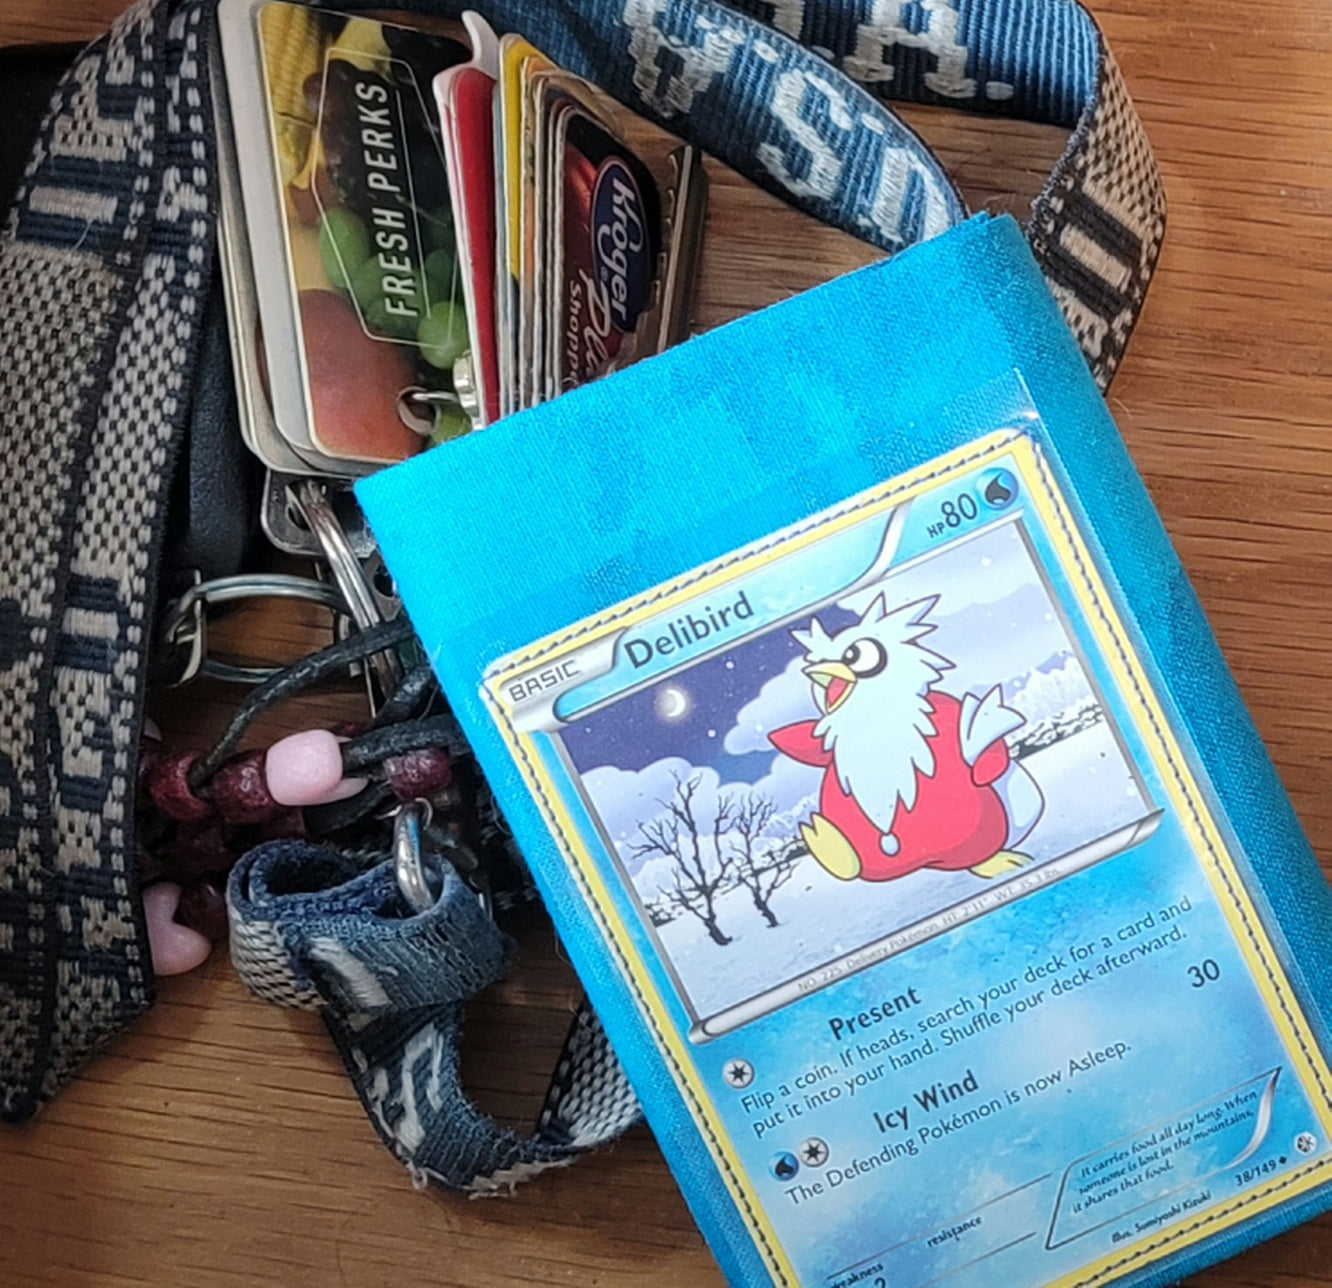 Handmade Delibird Pokemon card cloth wallet